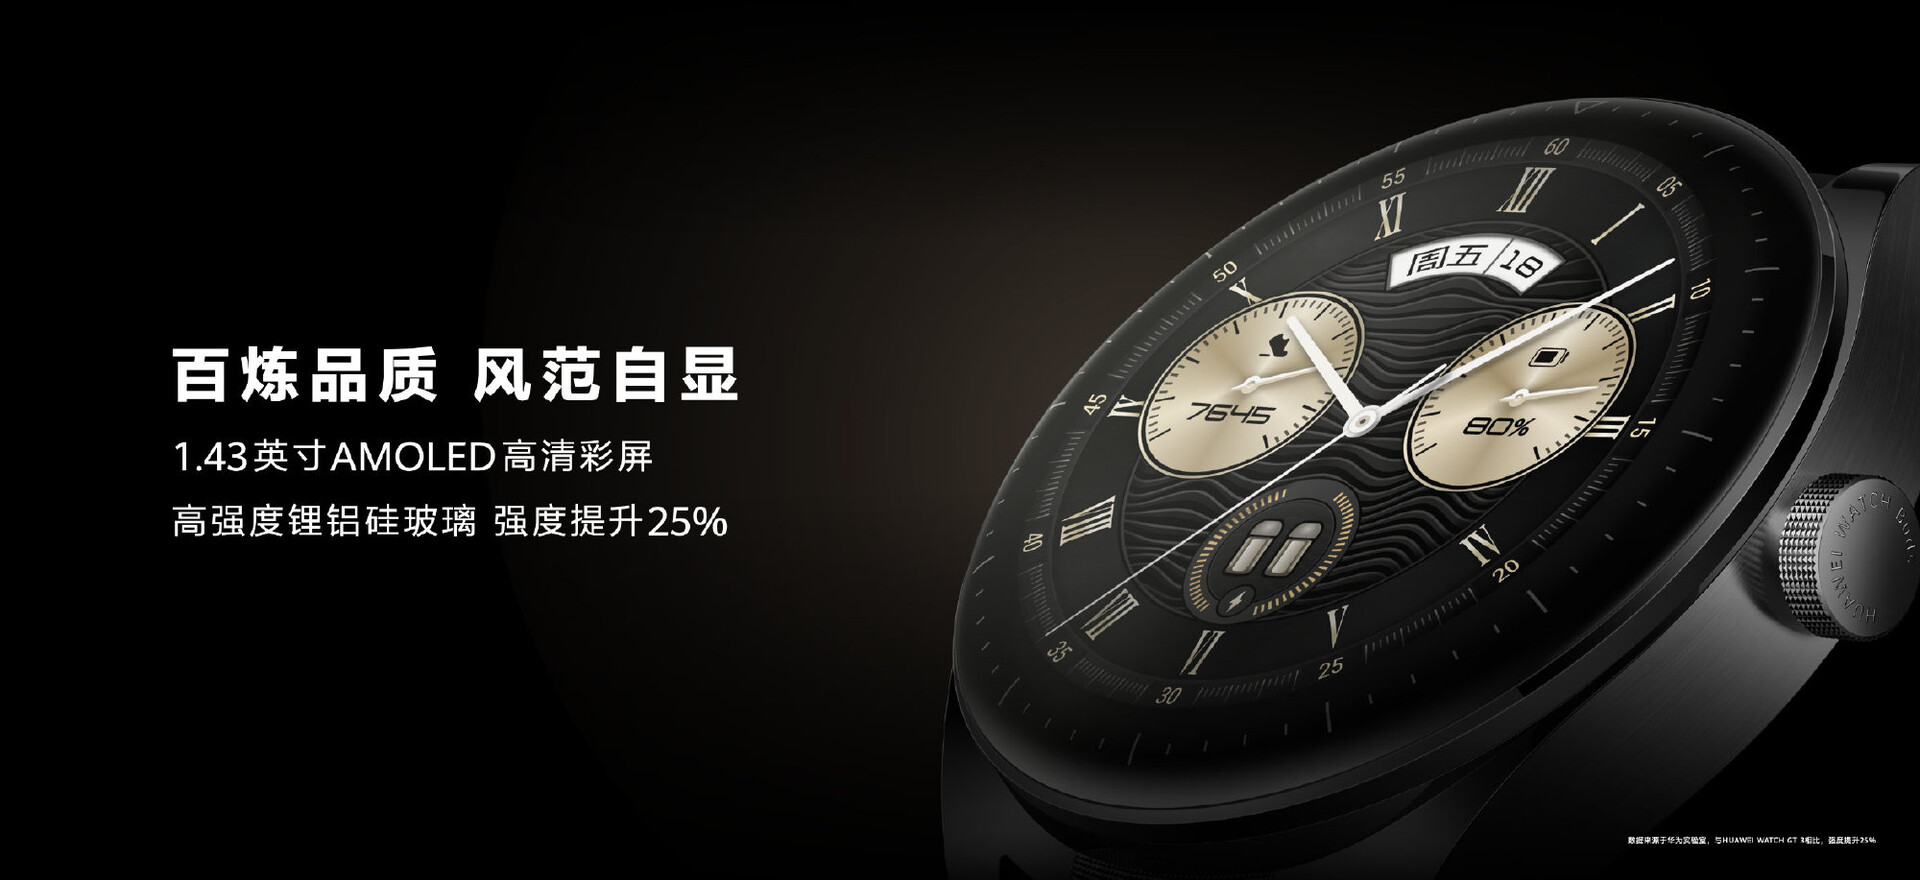 Huawei Watch Buds schicker verstaut Ohrhörer mit Huawei Smartwatch Notebookcheck.com in aufklappbarem News vorgestellt: - AMOLED-Display